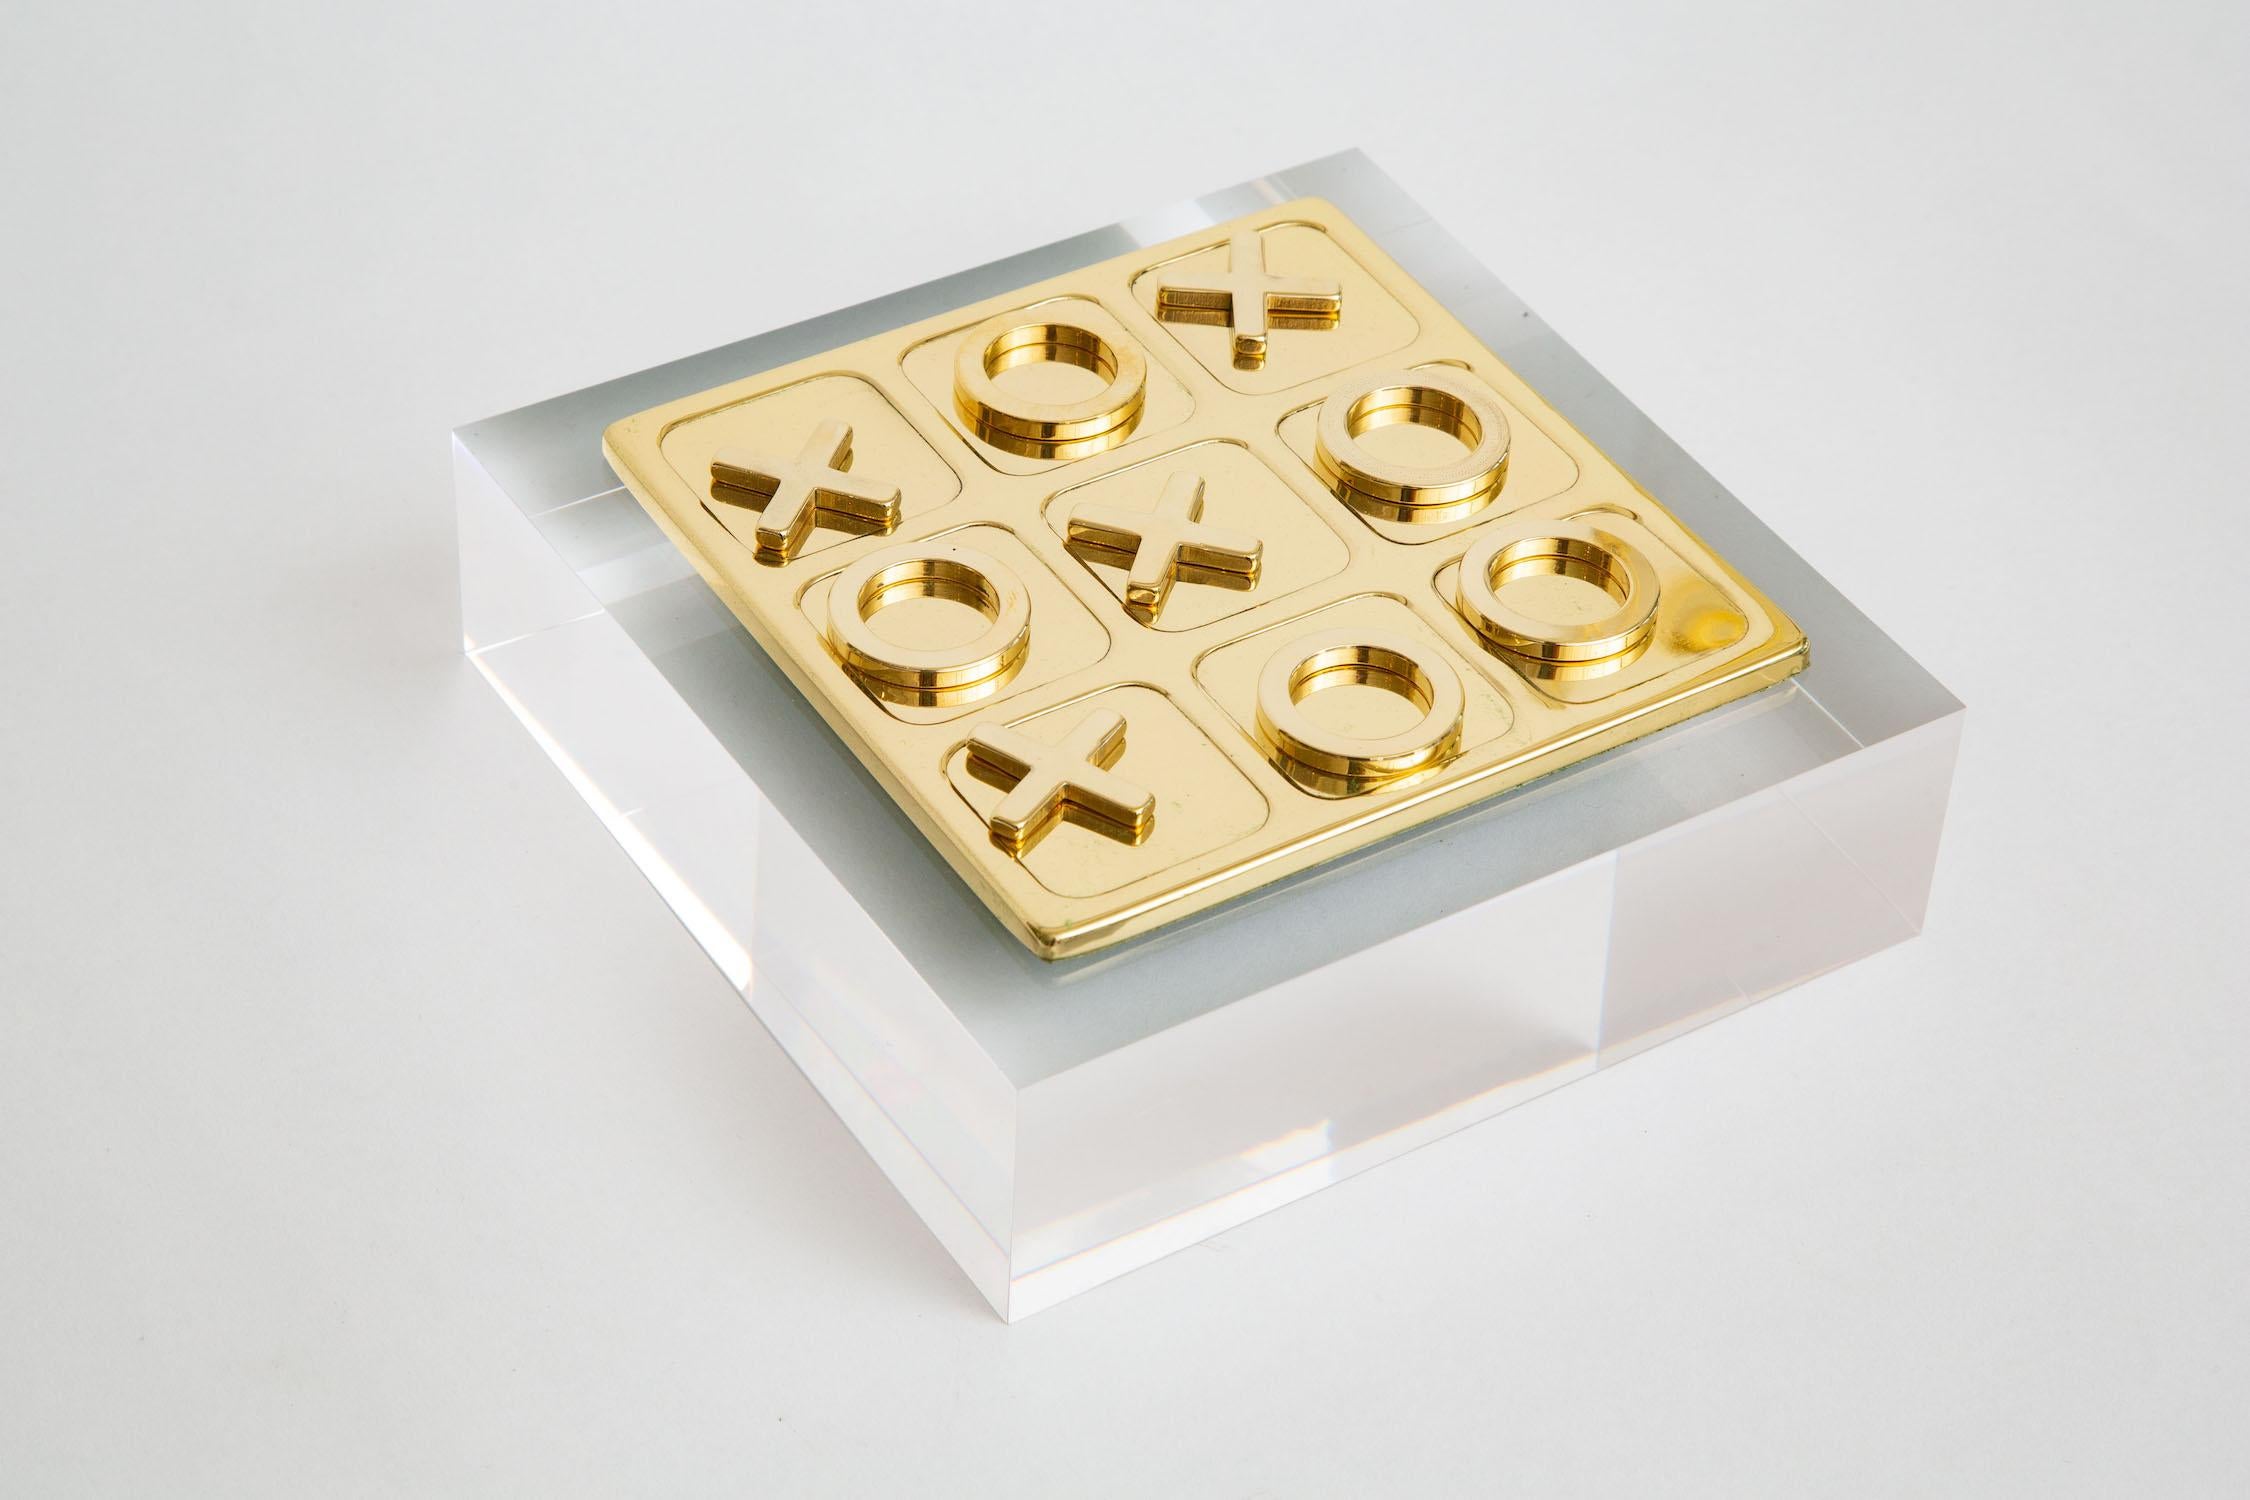 Dieses polierte Messing Mid-Century Modern Vintage tac tac toe quadratische Spiel Set hat 10 Spieler insgesamt von X und 0 